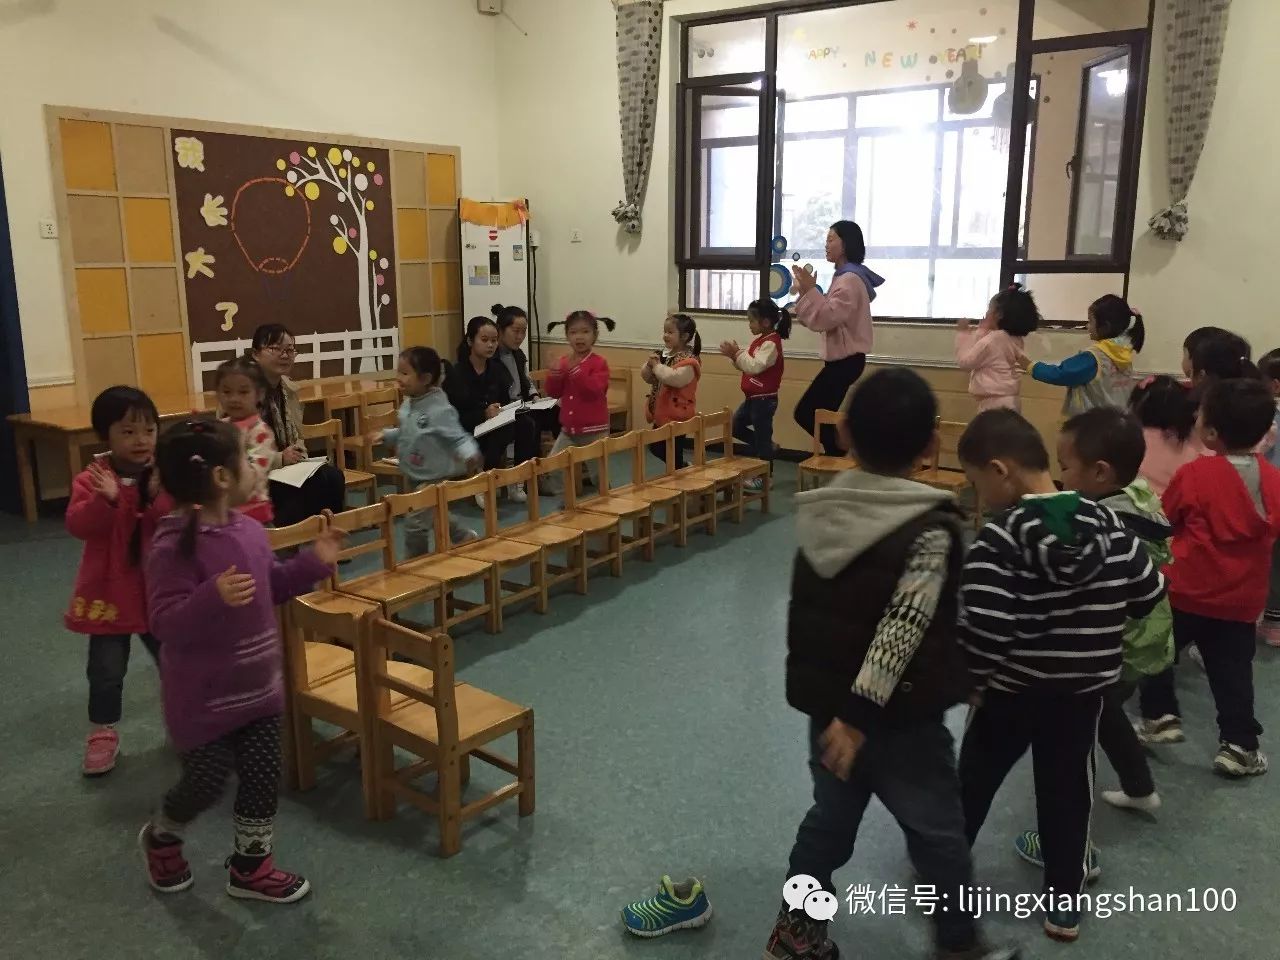 英蓝丽景香山幼儿园图片